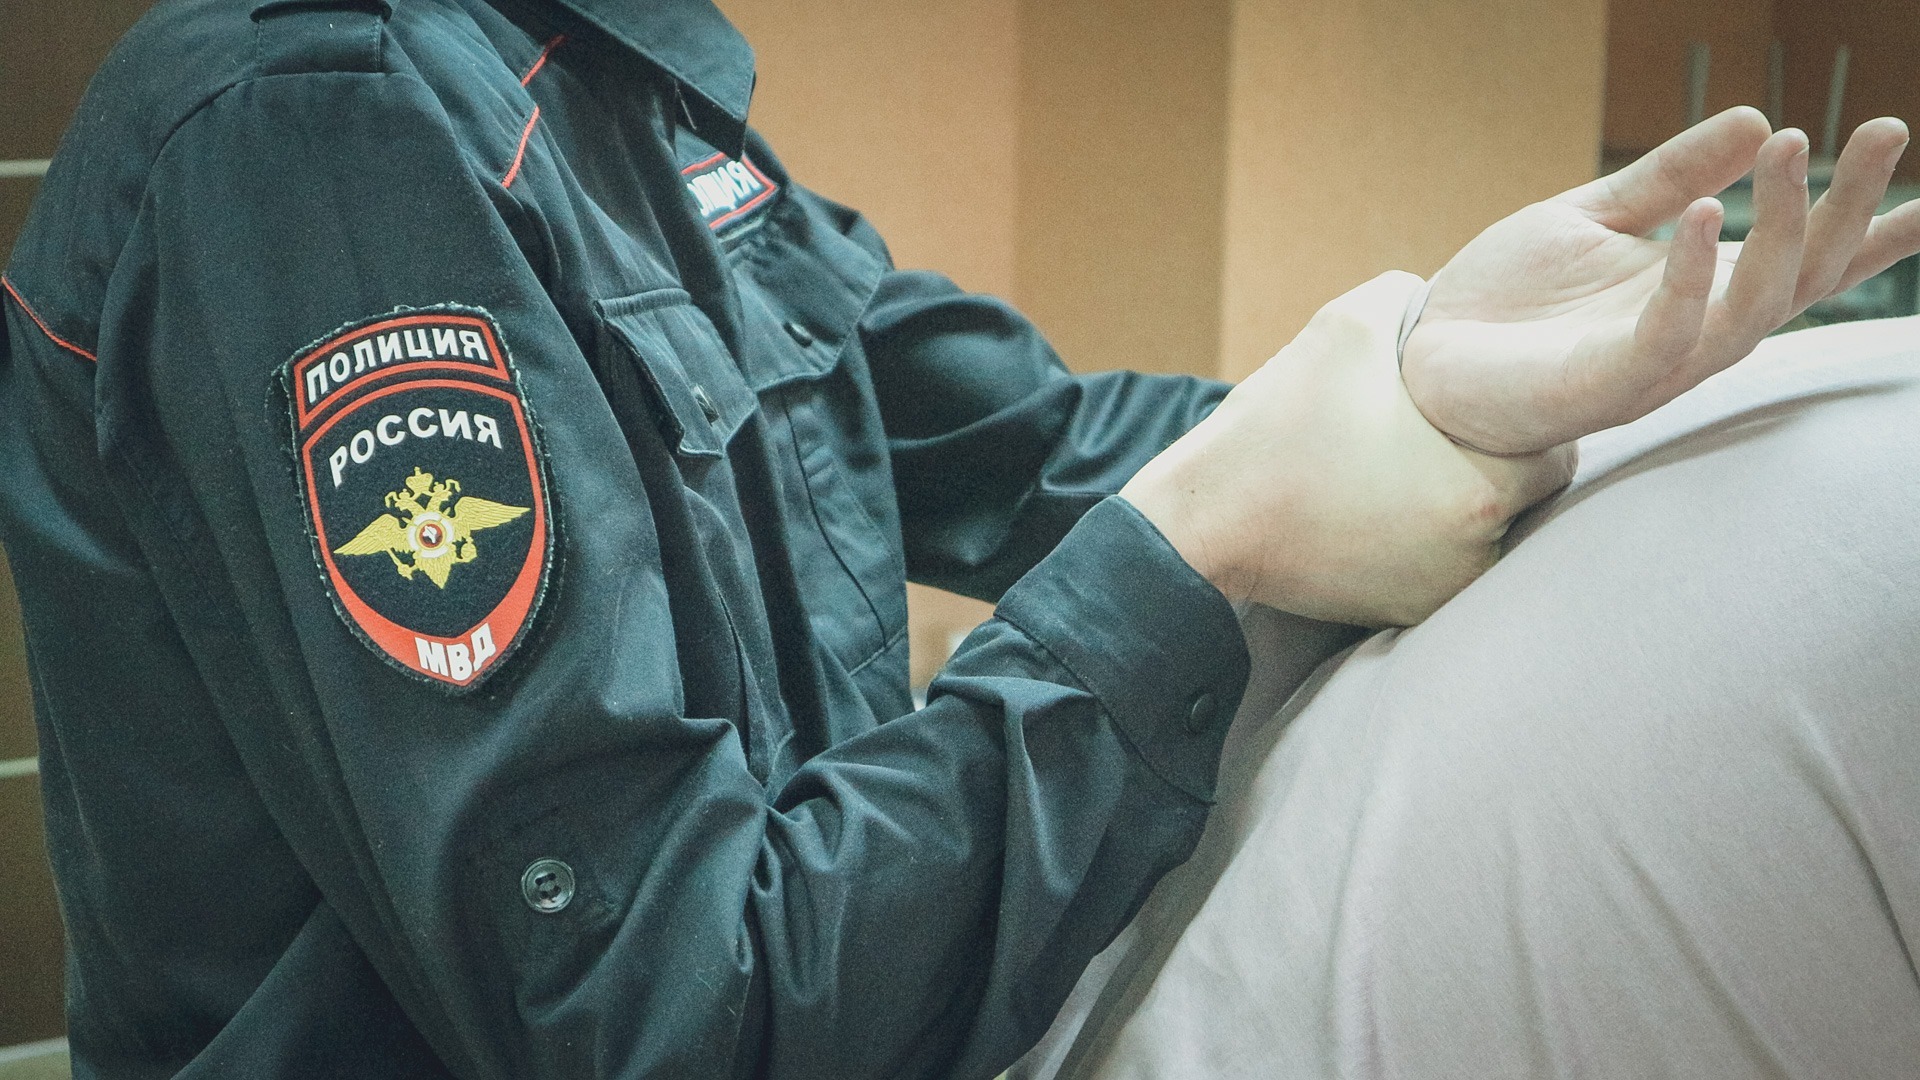 Надругавшегося над ребенком педофила взяли под стражу в Волгограде